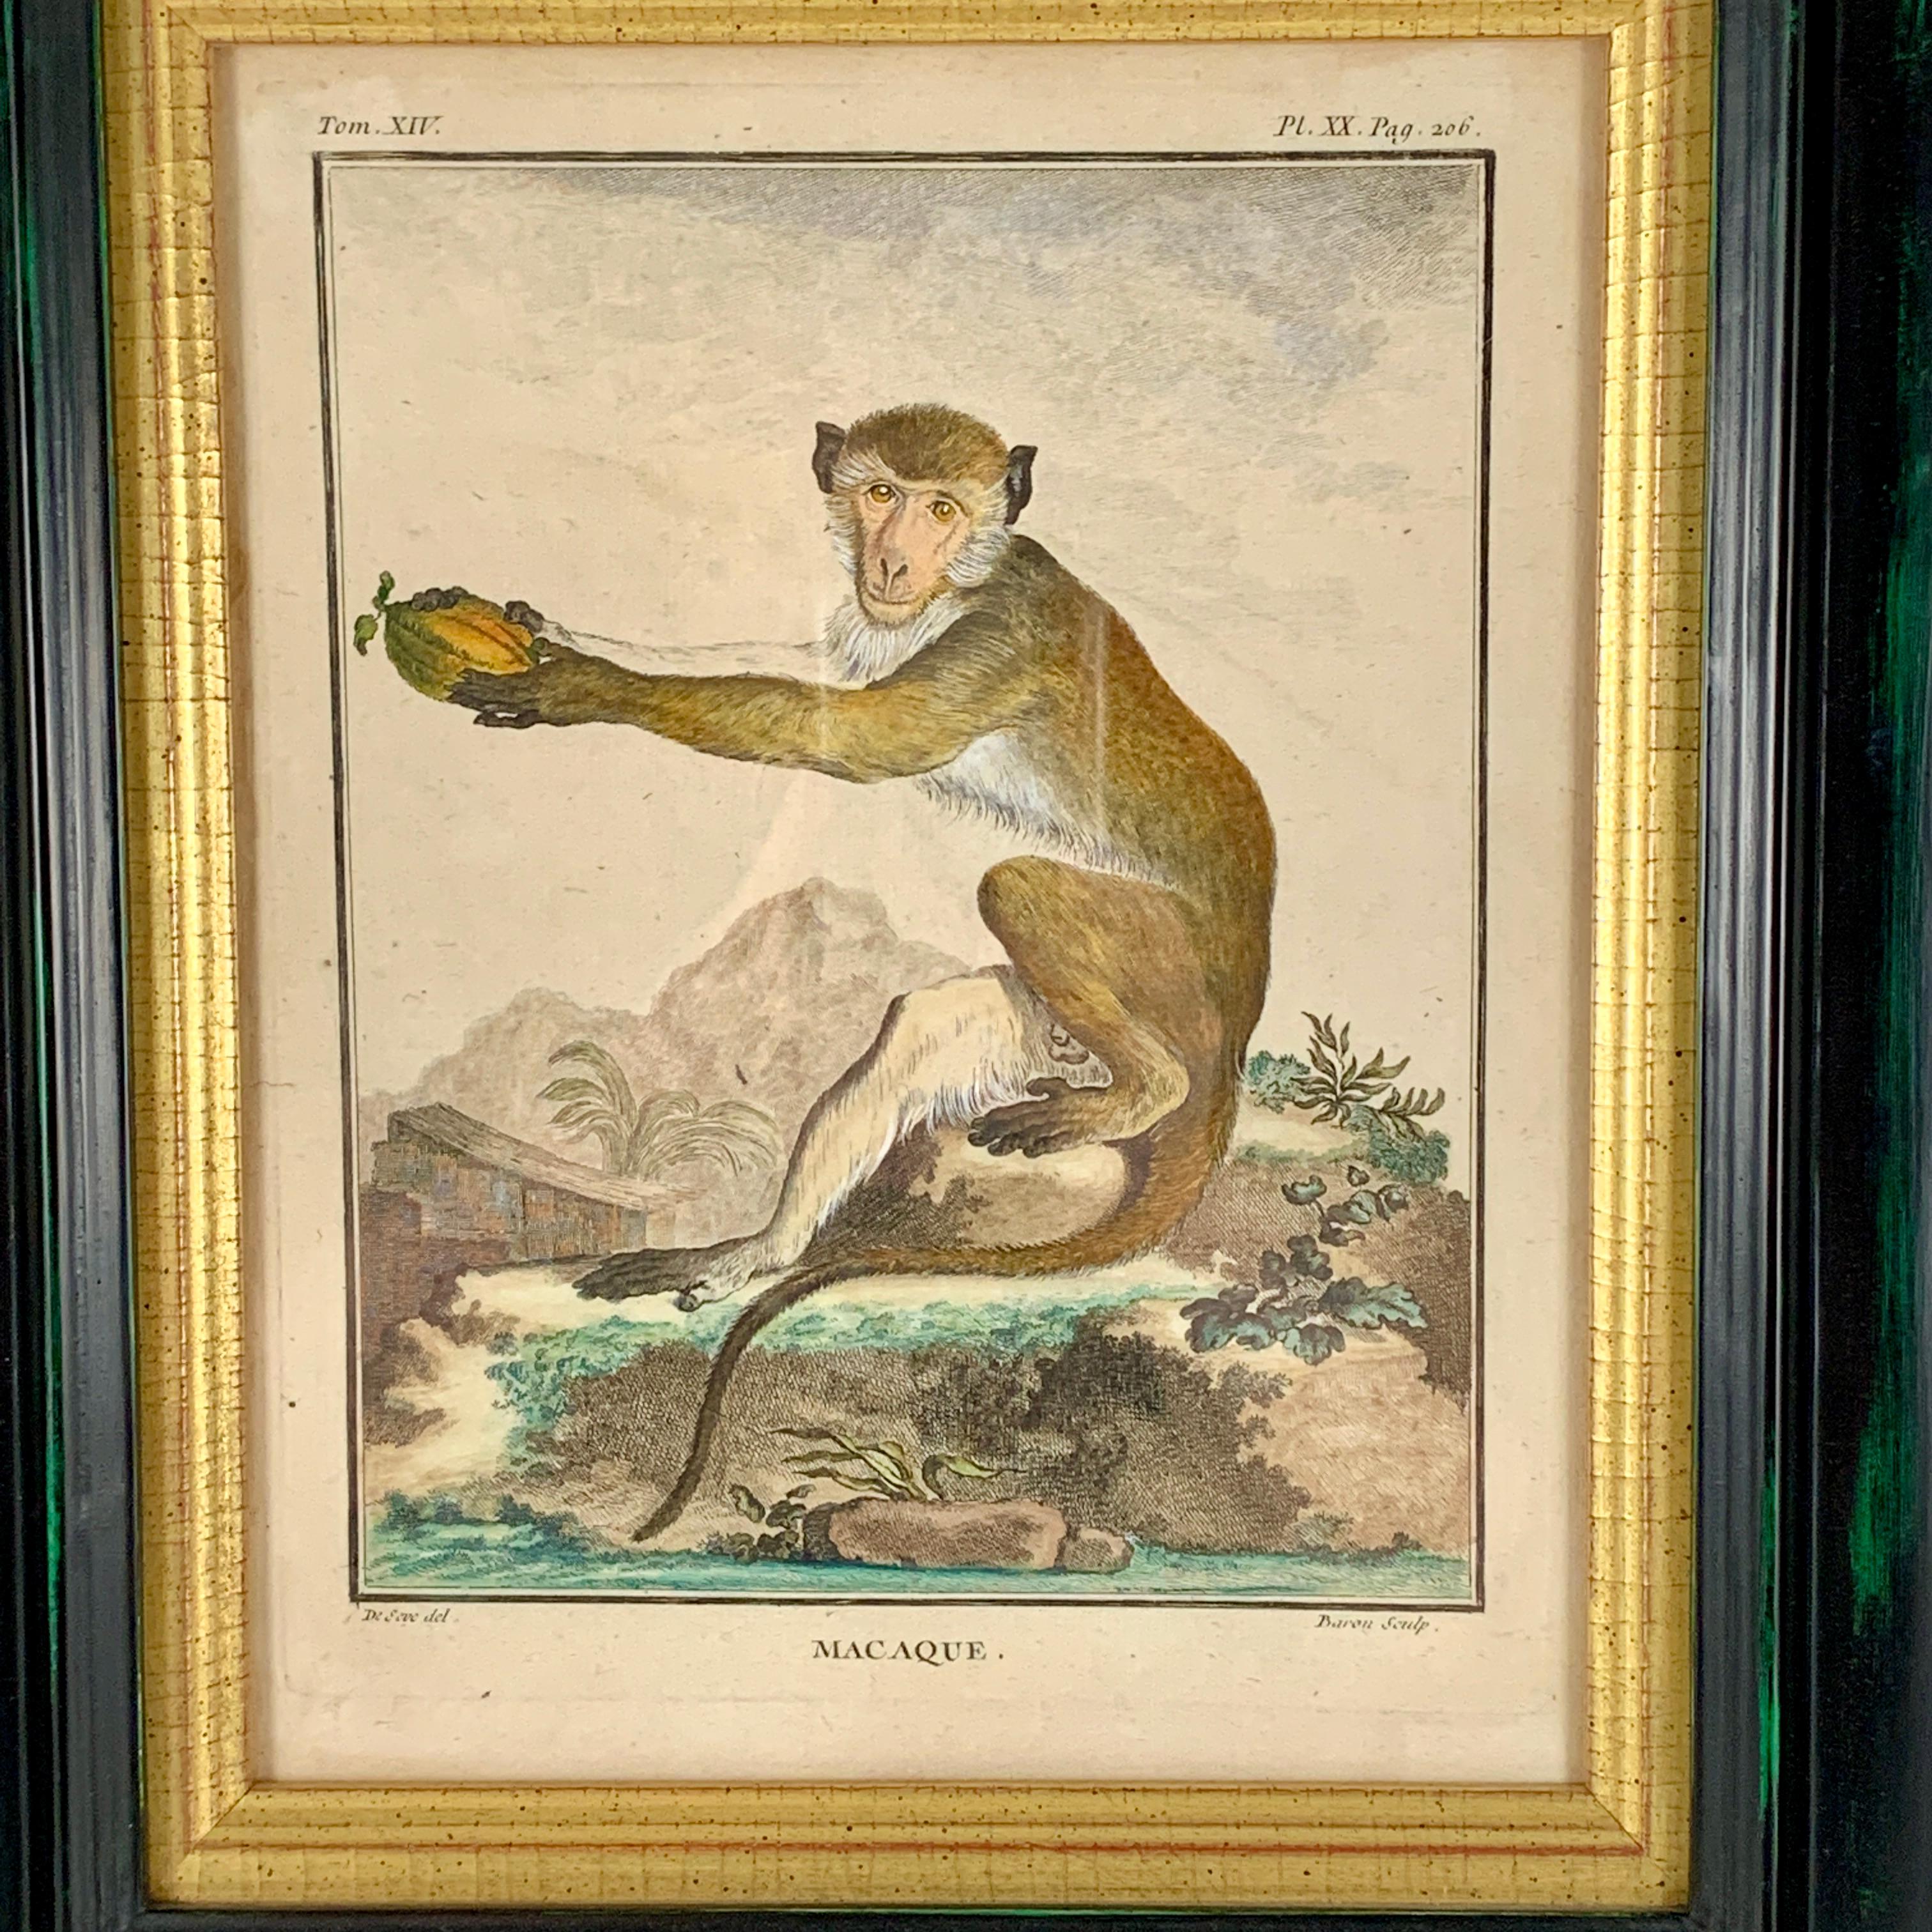 Ein schön gerahmter Affenteller aus der Serie Buffon Comte de Quadrúpedes von Georges-Louis Leclerc, Frankreich - um 1770.

Ein handkolorierter Kupferstich mit dem Titel Makake, aus der 